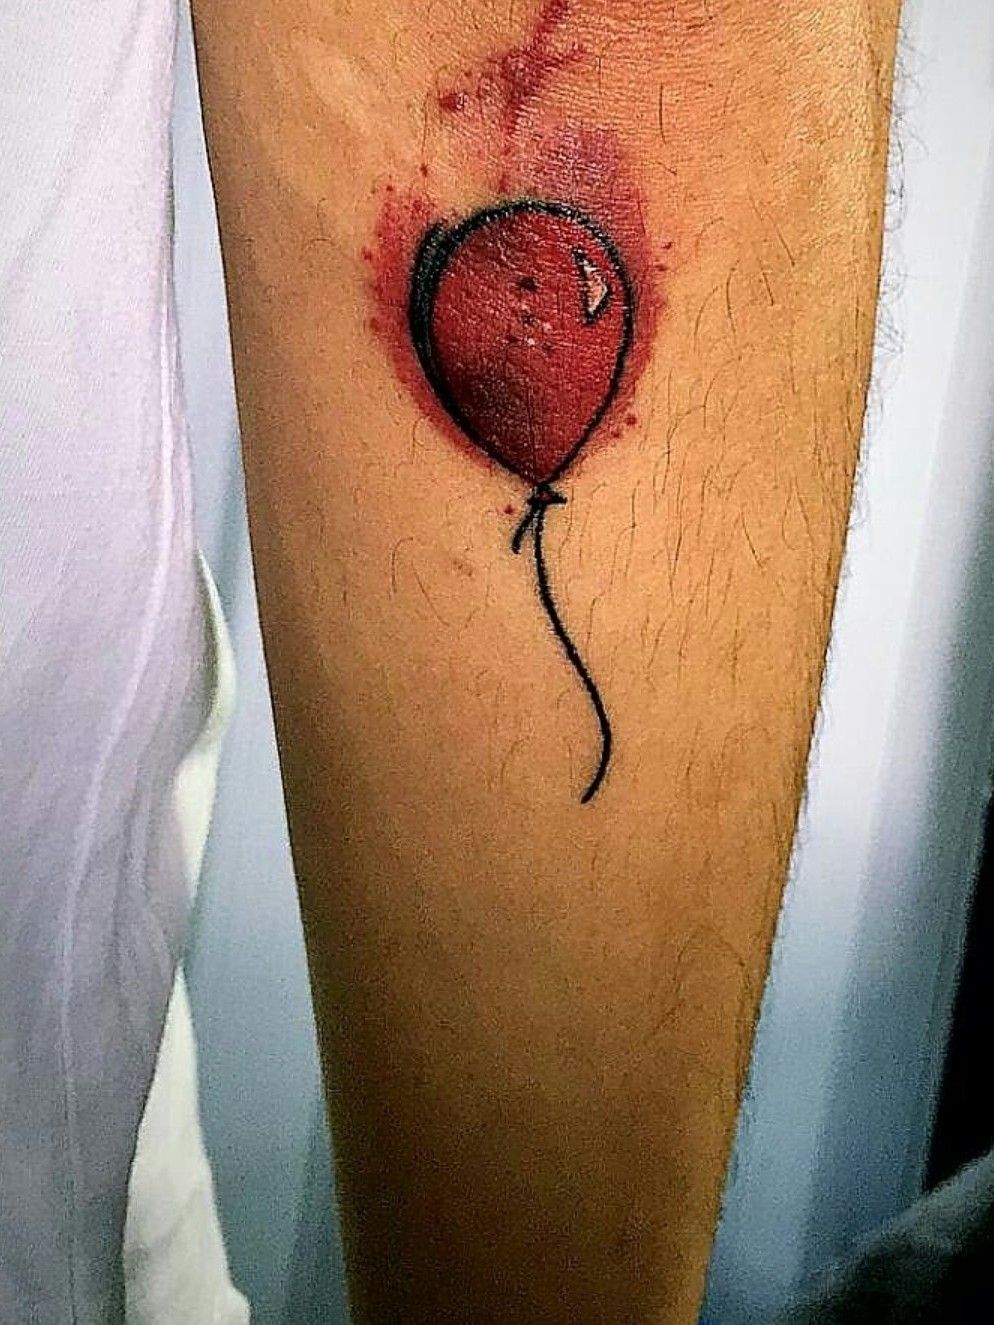 a tattoo of balloons, tattoo art, black and white tattoo, - Arthub.ai